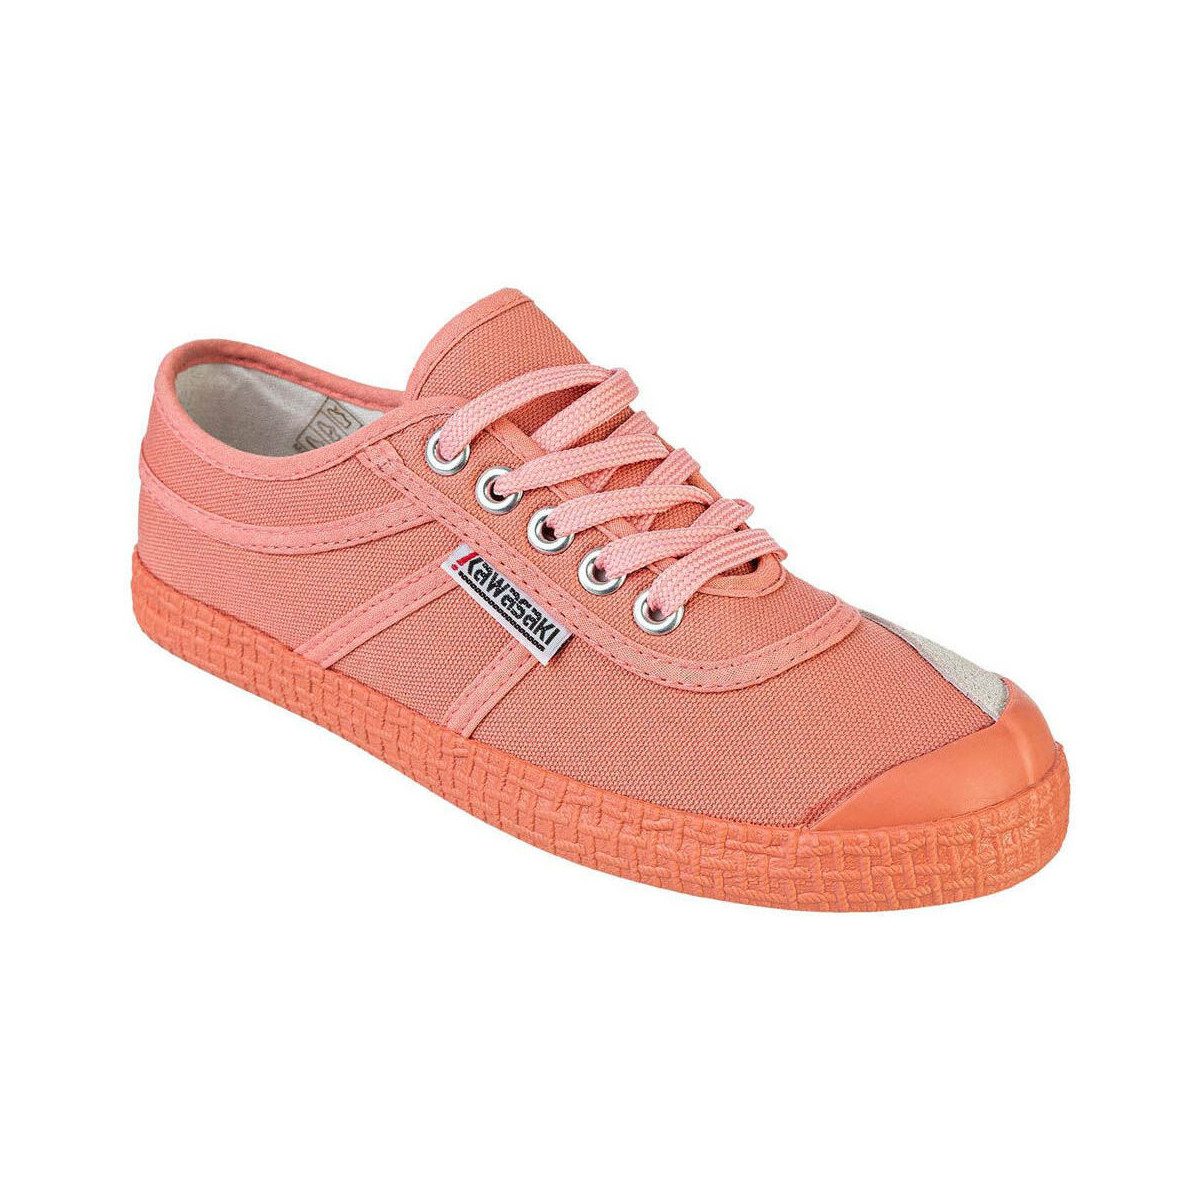 Boty Ženy Módní tenisky Kawasaki Color Block Shoe K202430 4144 Shell Pink Růžová